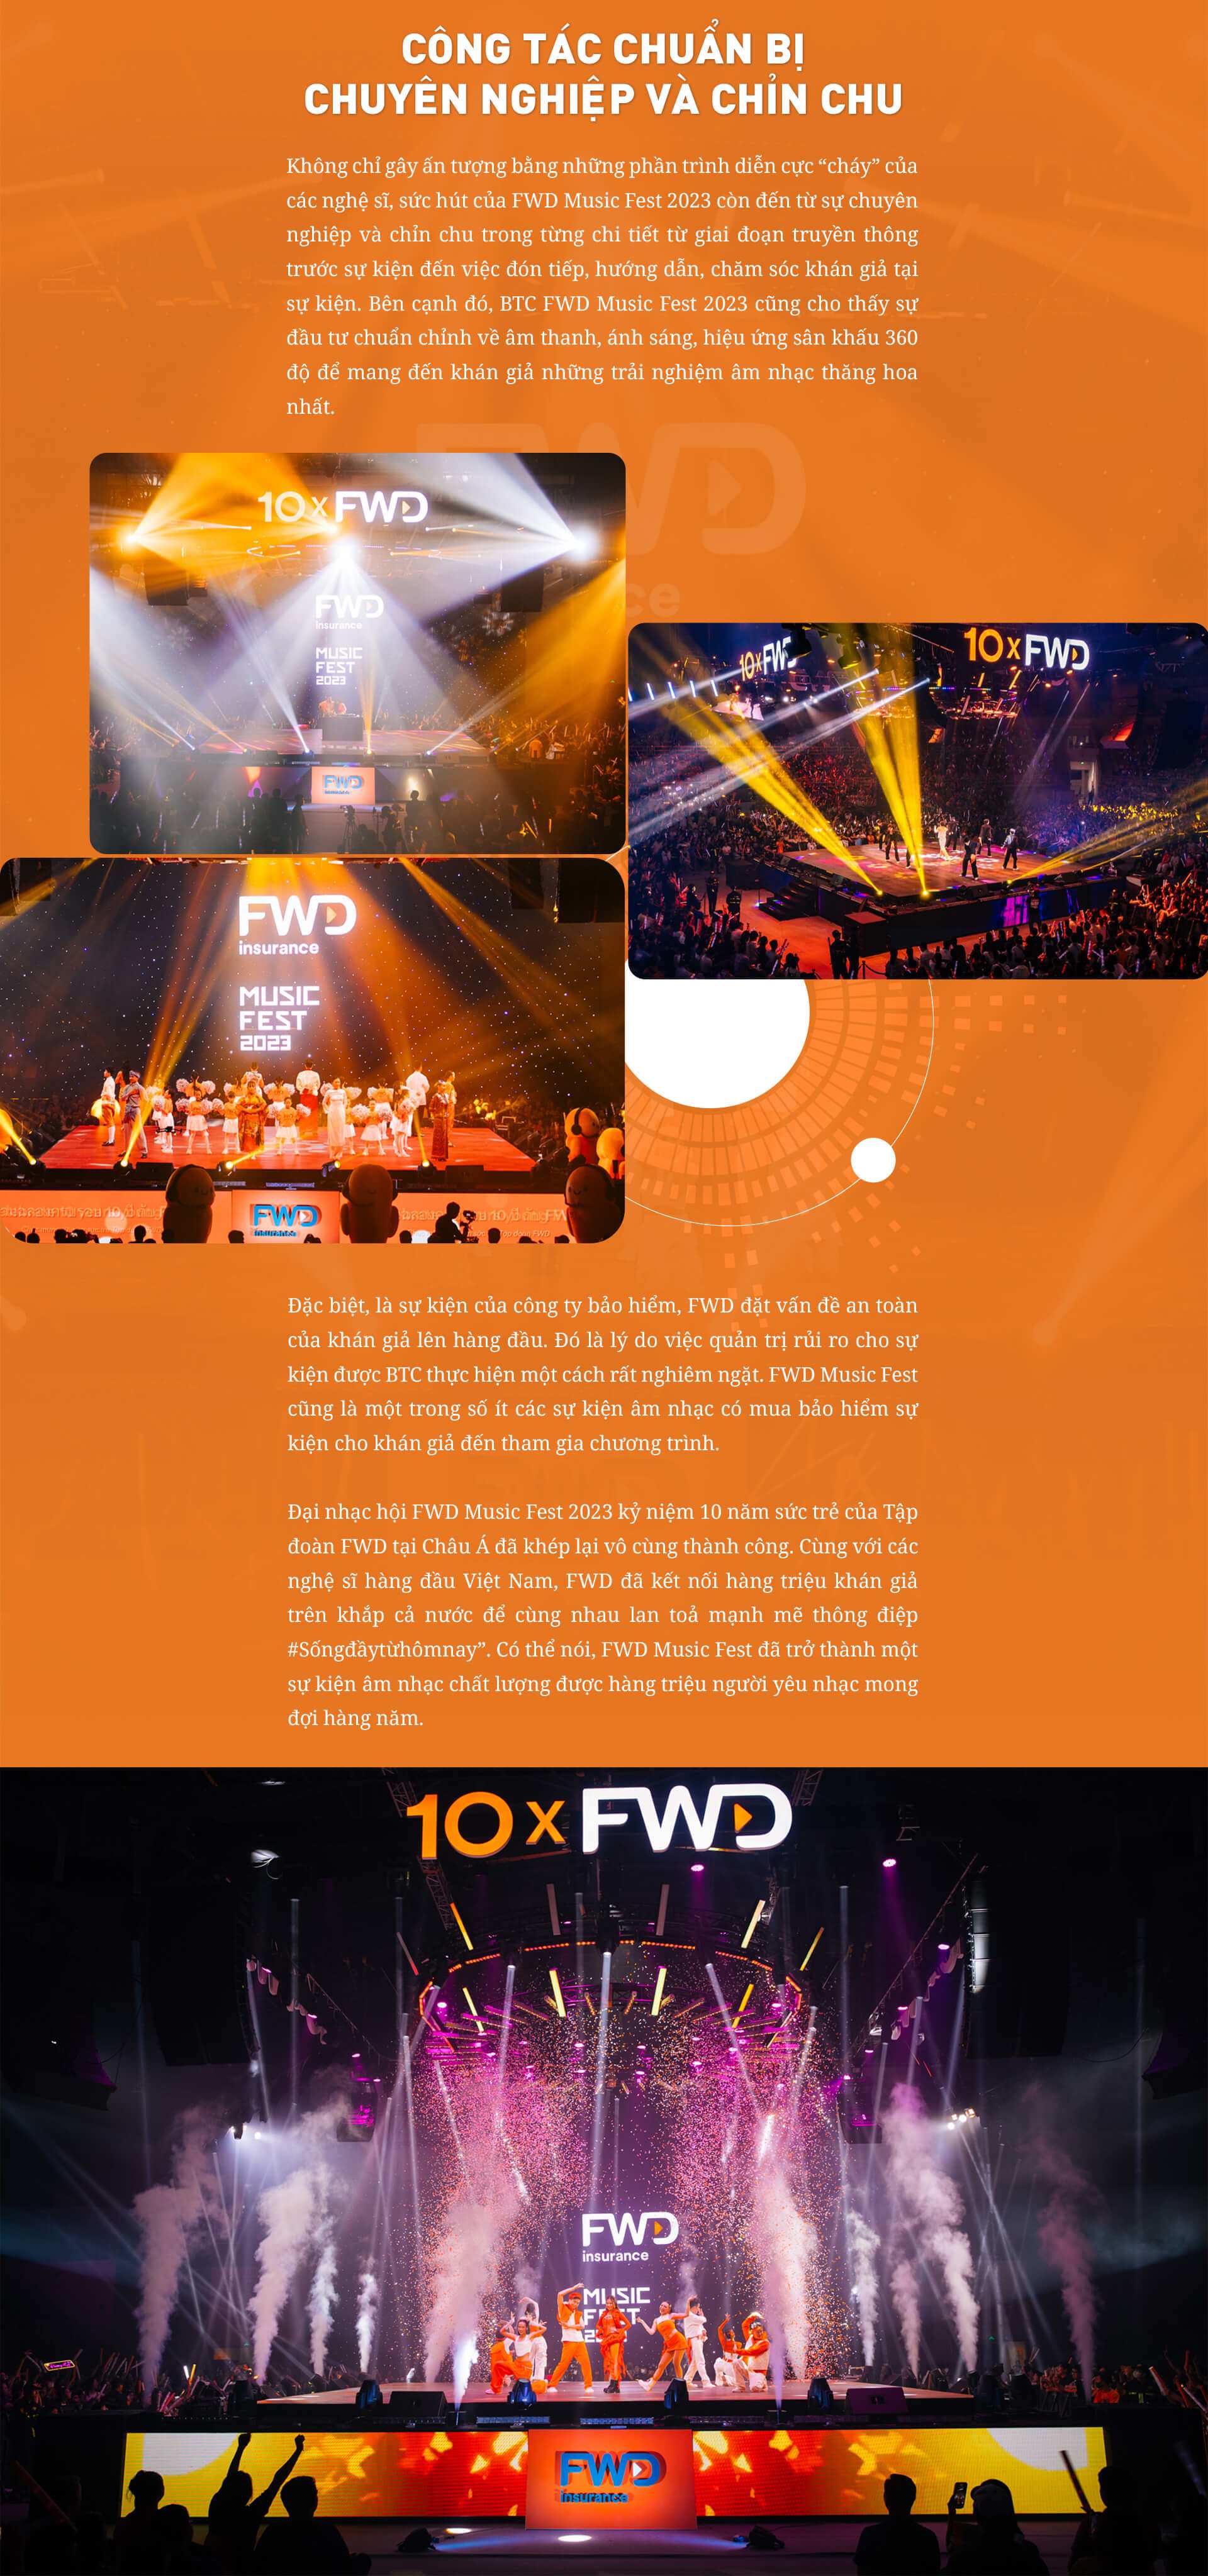 Thương hiệu FWD tiếp tục quyến rũ khán giả với FWD Music Fest 2023 - 5